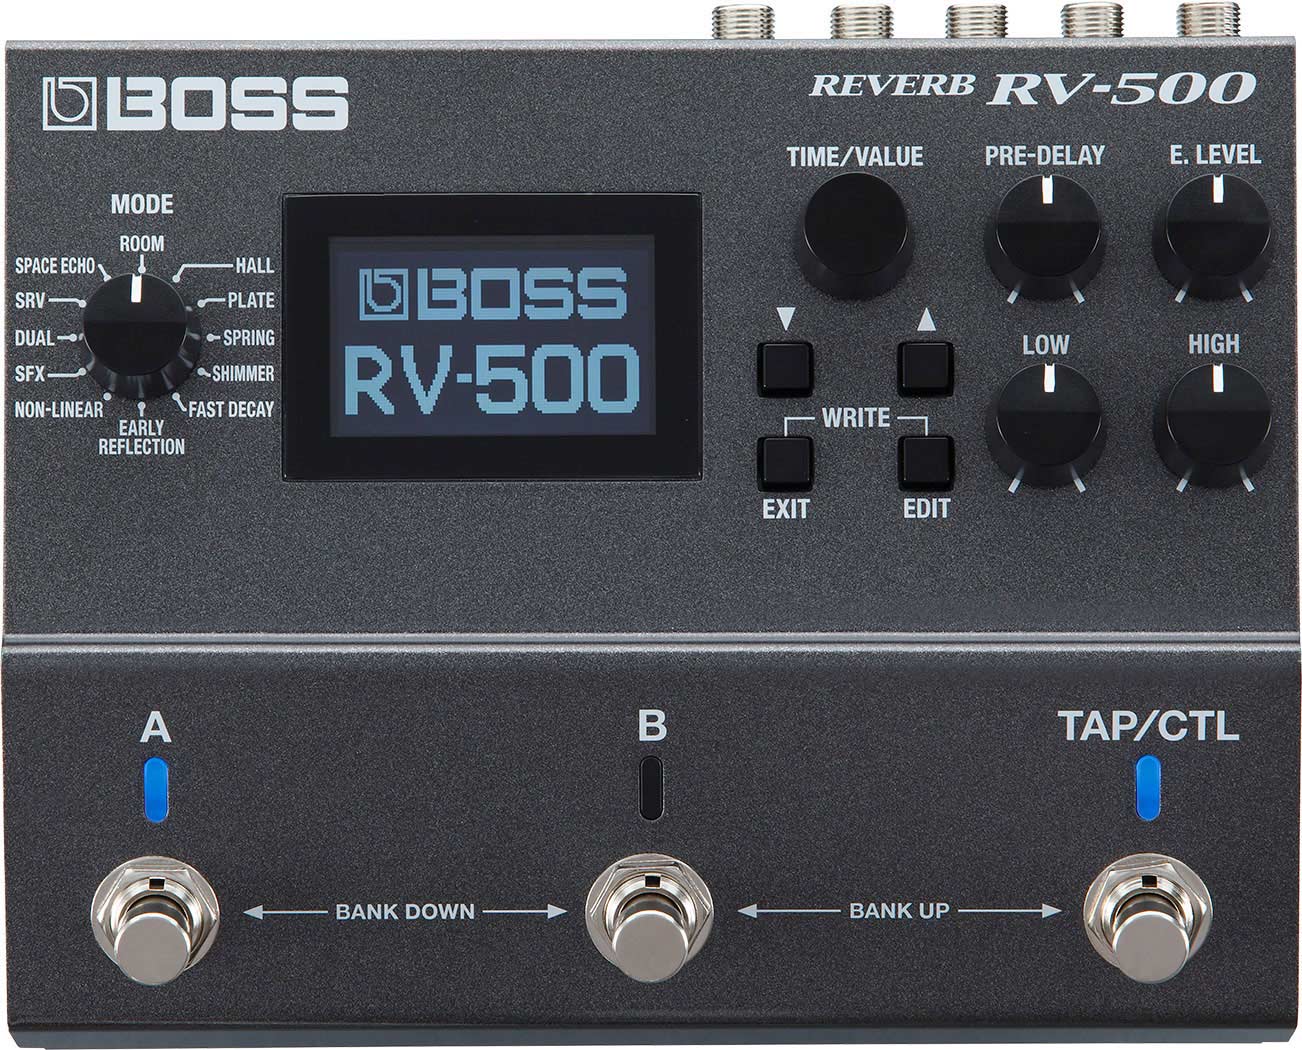 BOSS RV-500 - REVERB